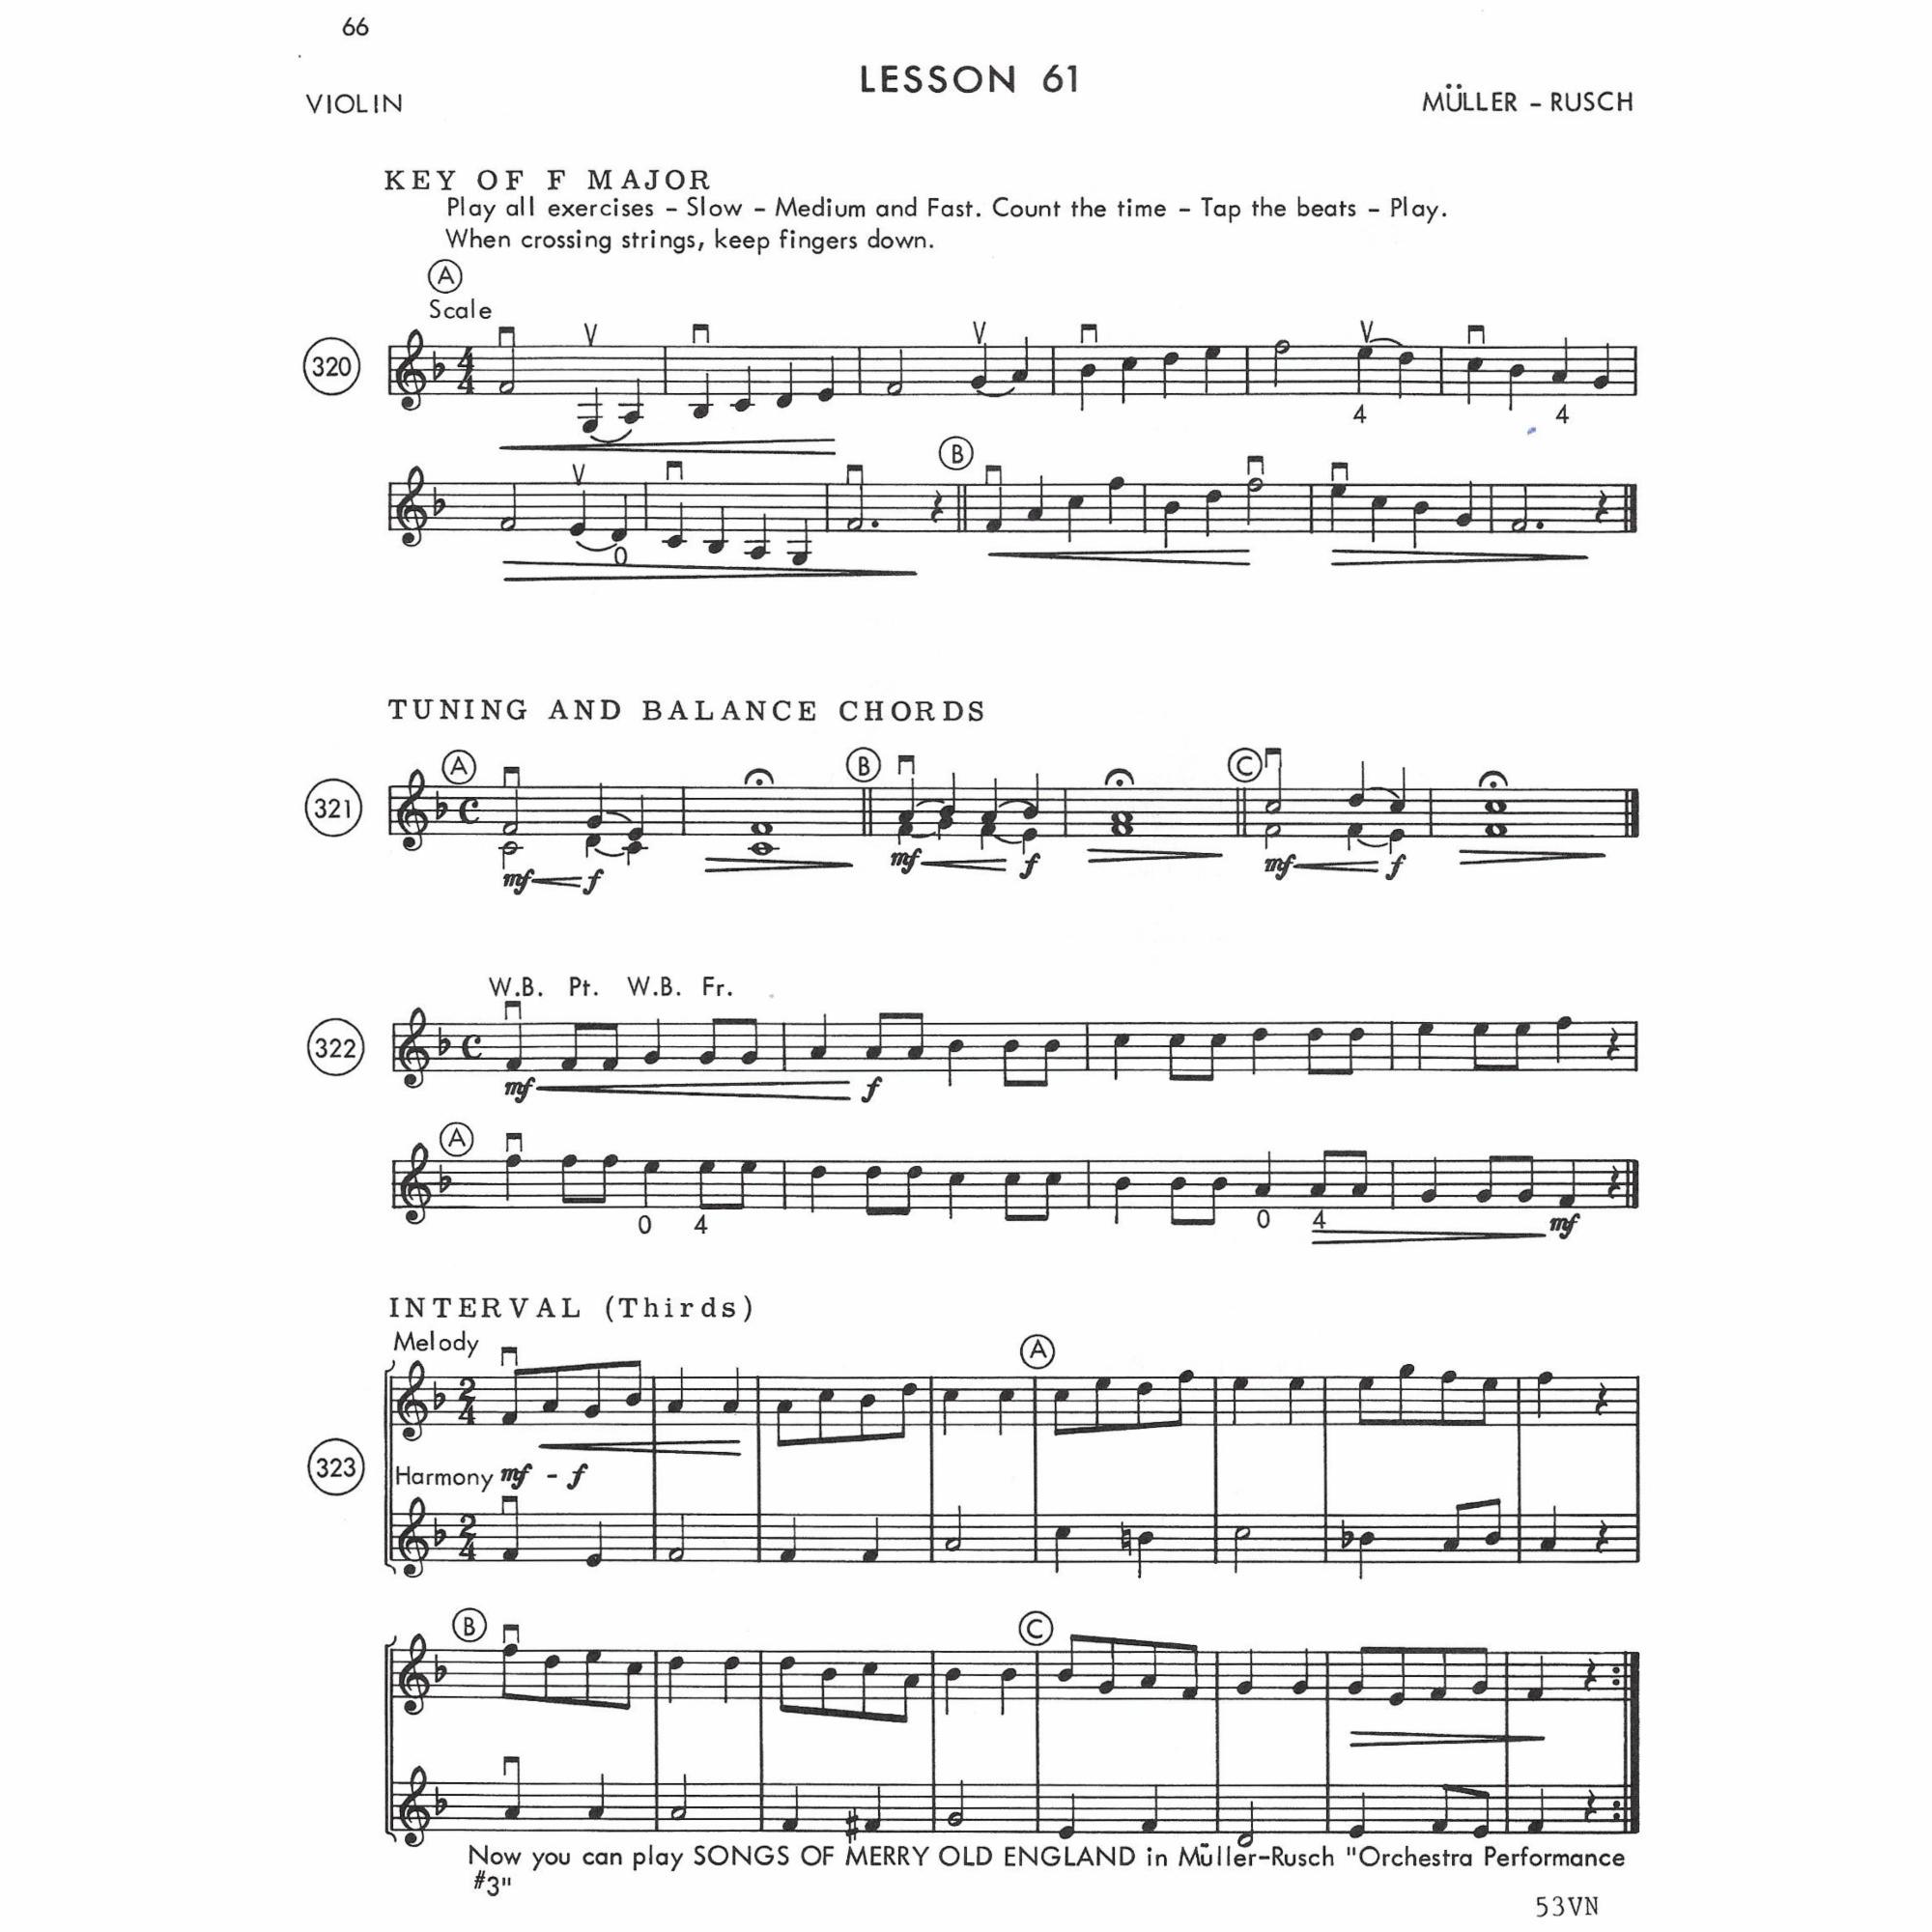 Sample: Violin (Pg. 2/66)